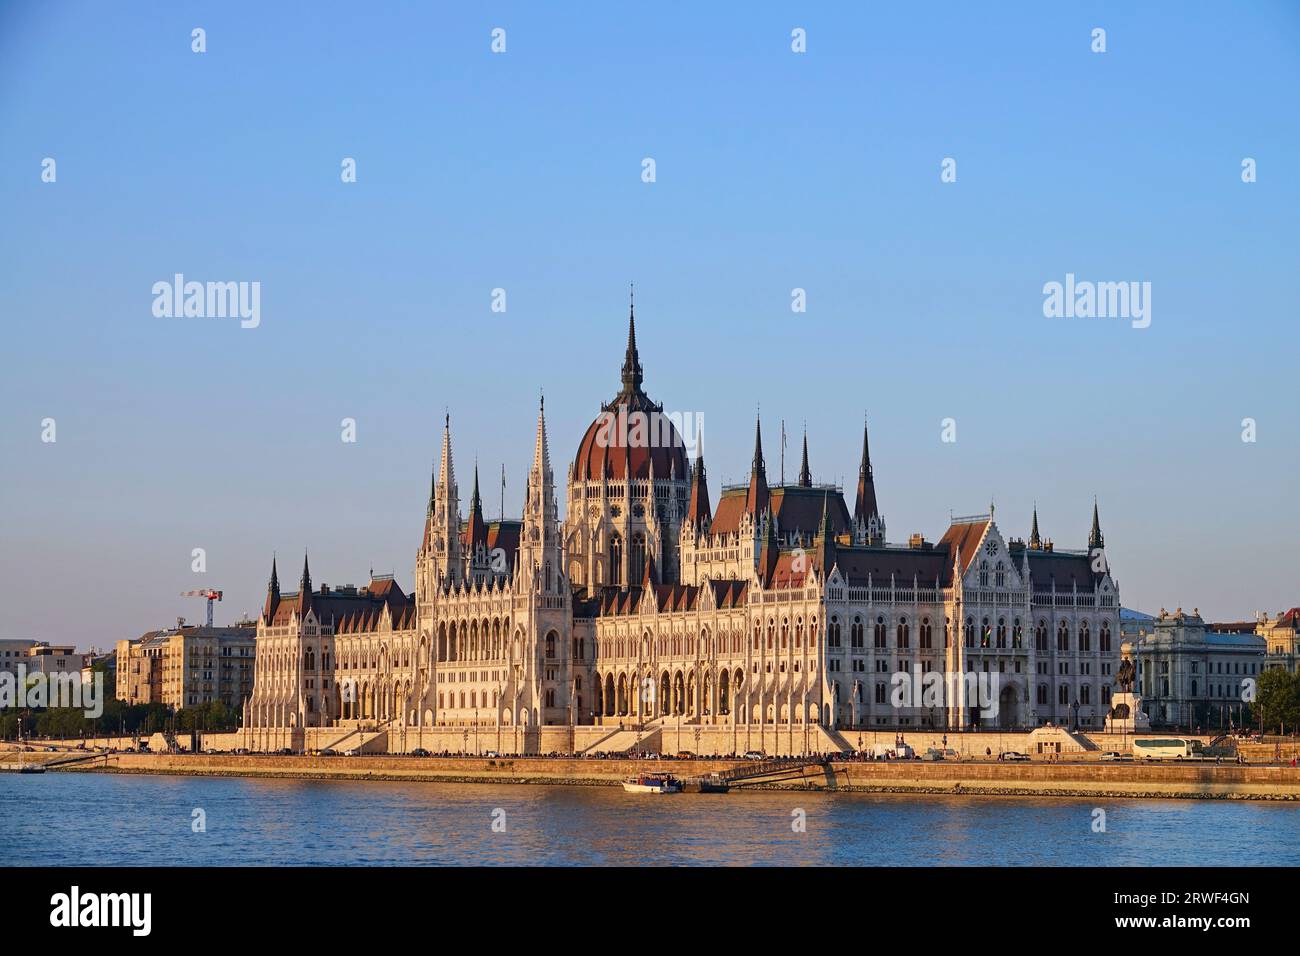 Ungarischen Parlament und Donau, Budapest, Ungarn Stockfoto